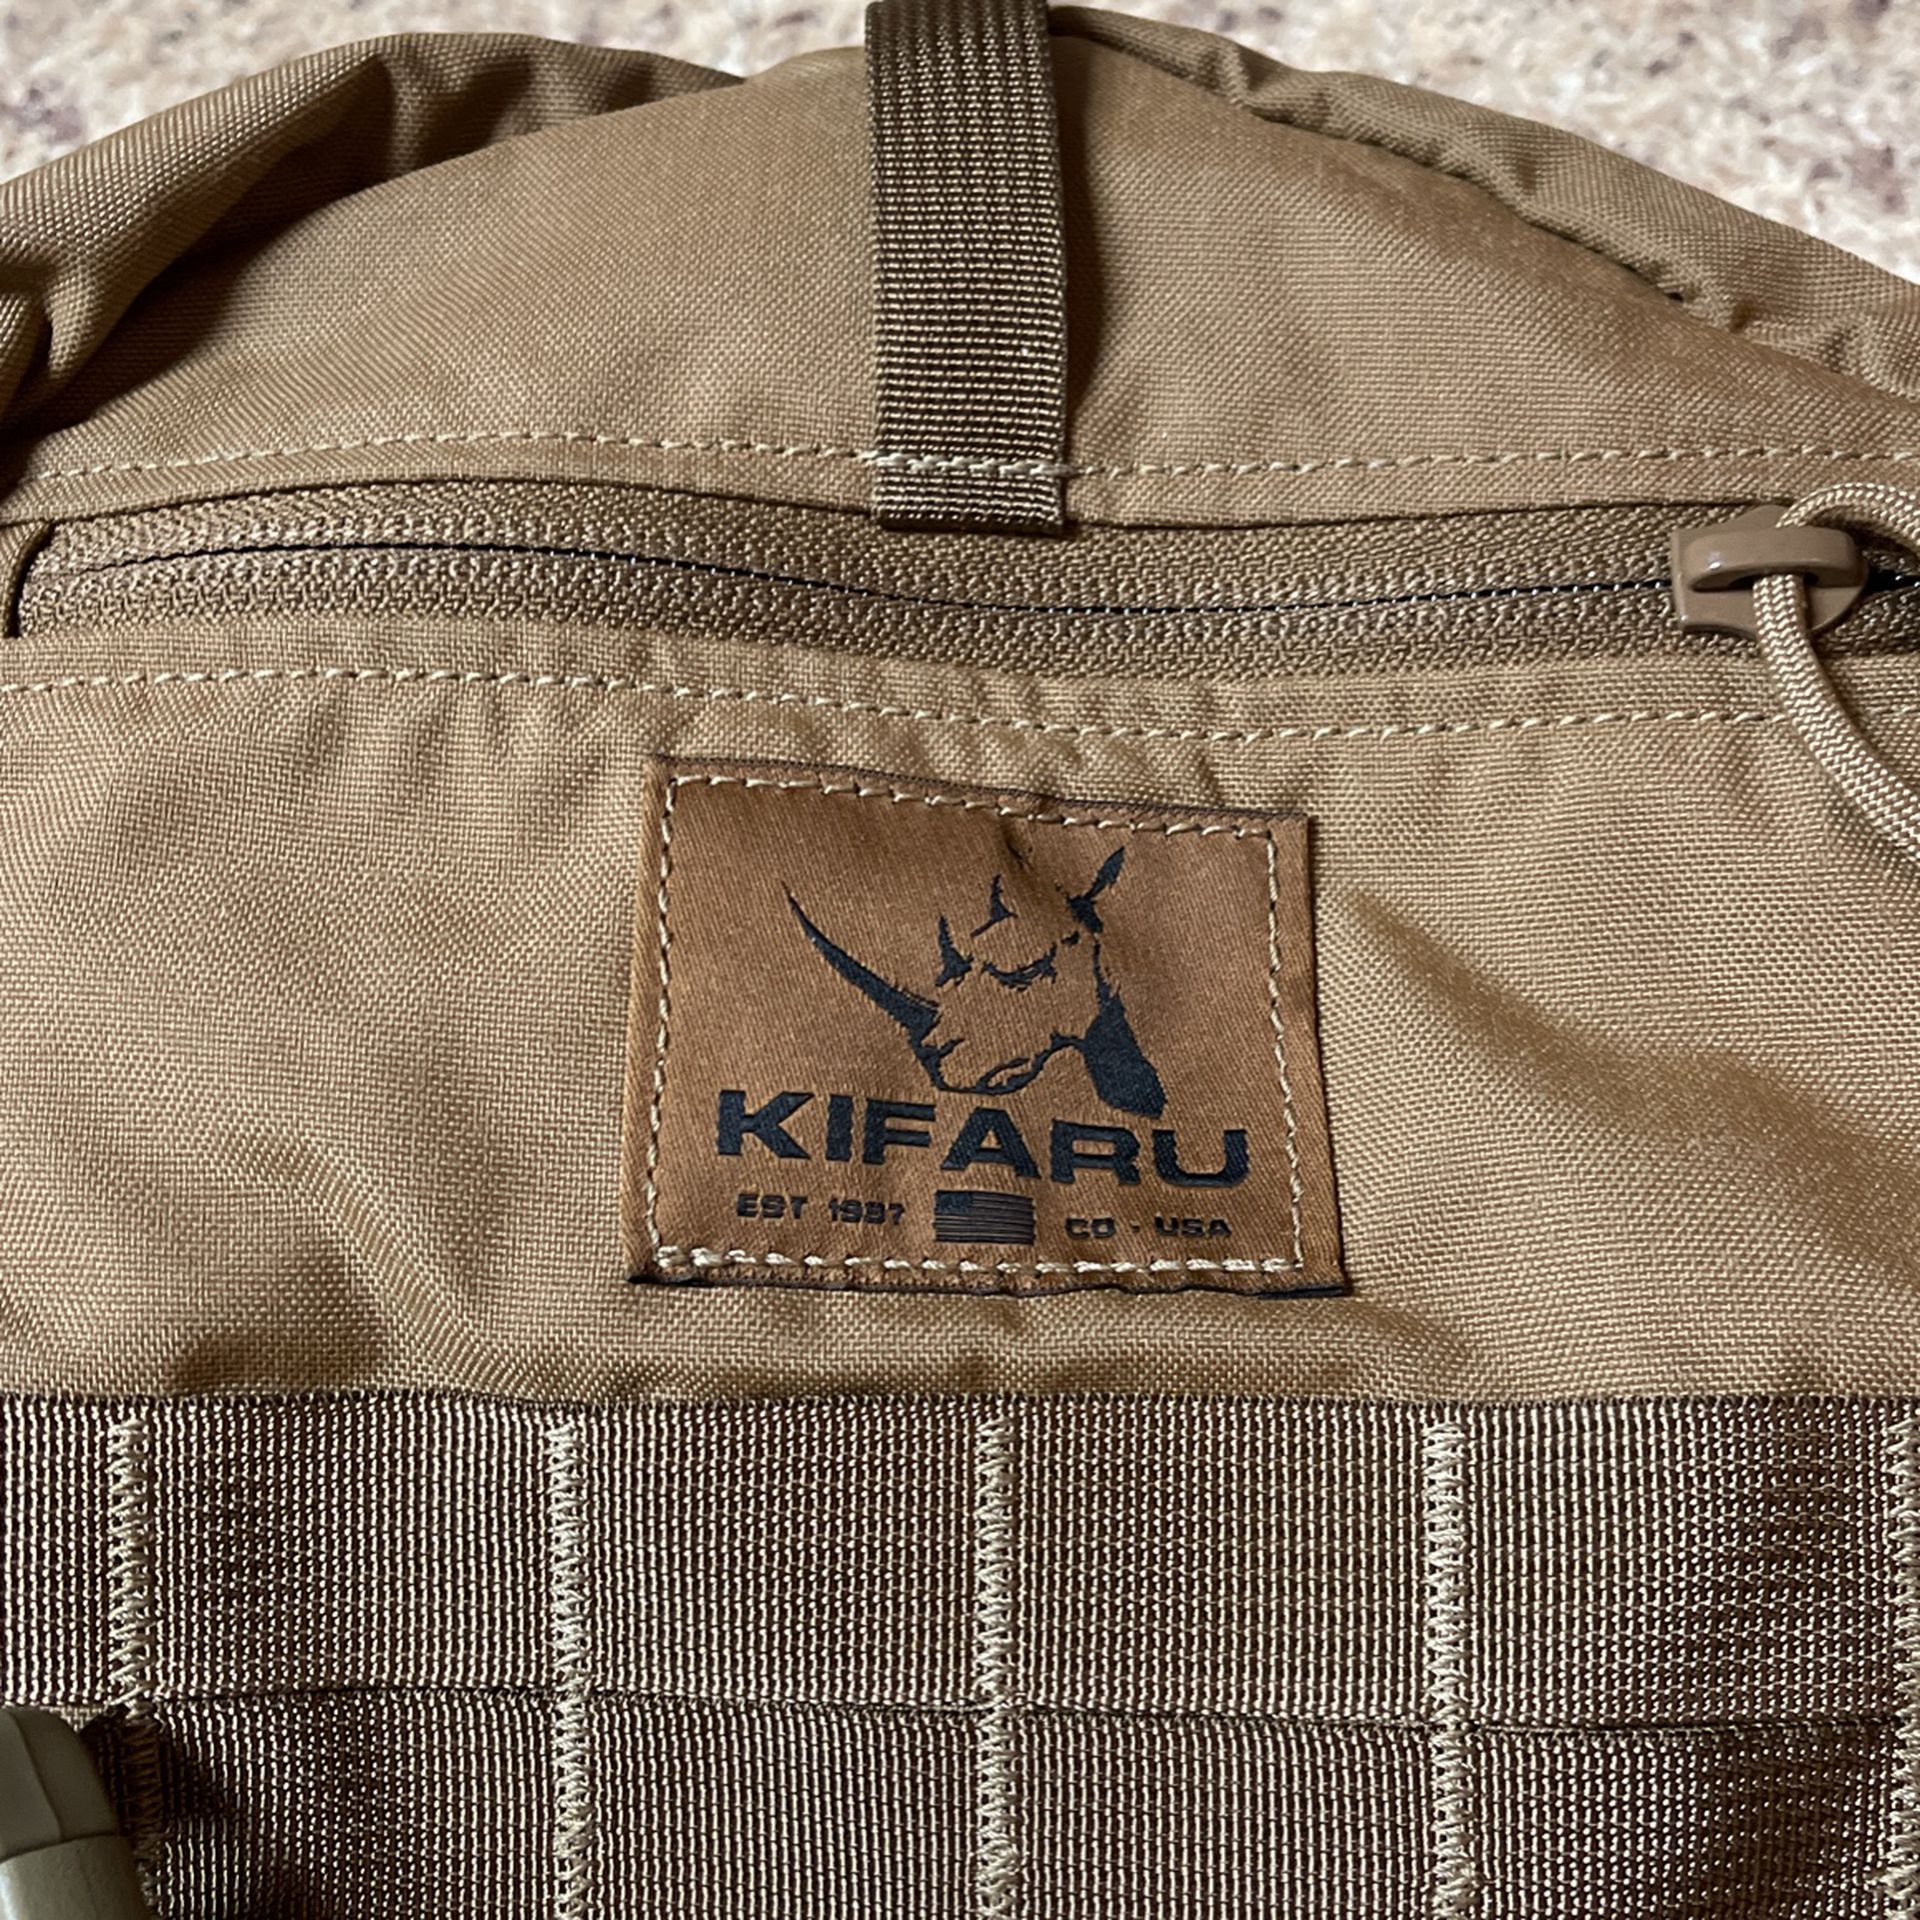 NEW!!!KIFARU Hunting backpack (No frame Included)